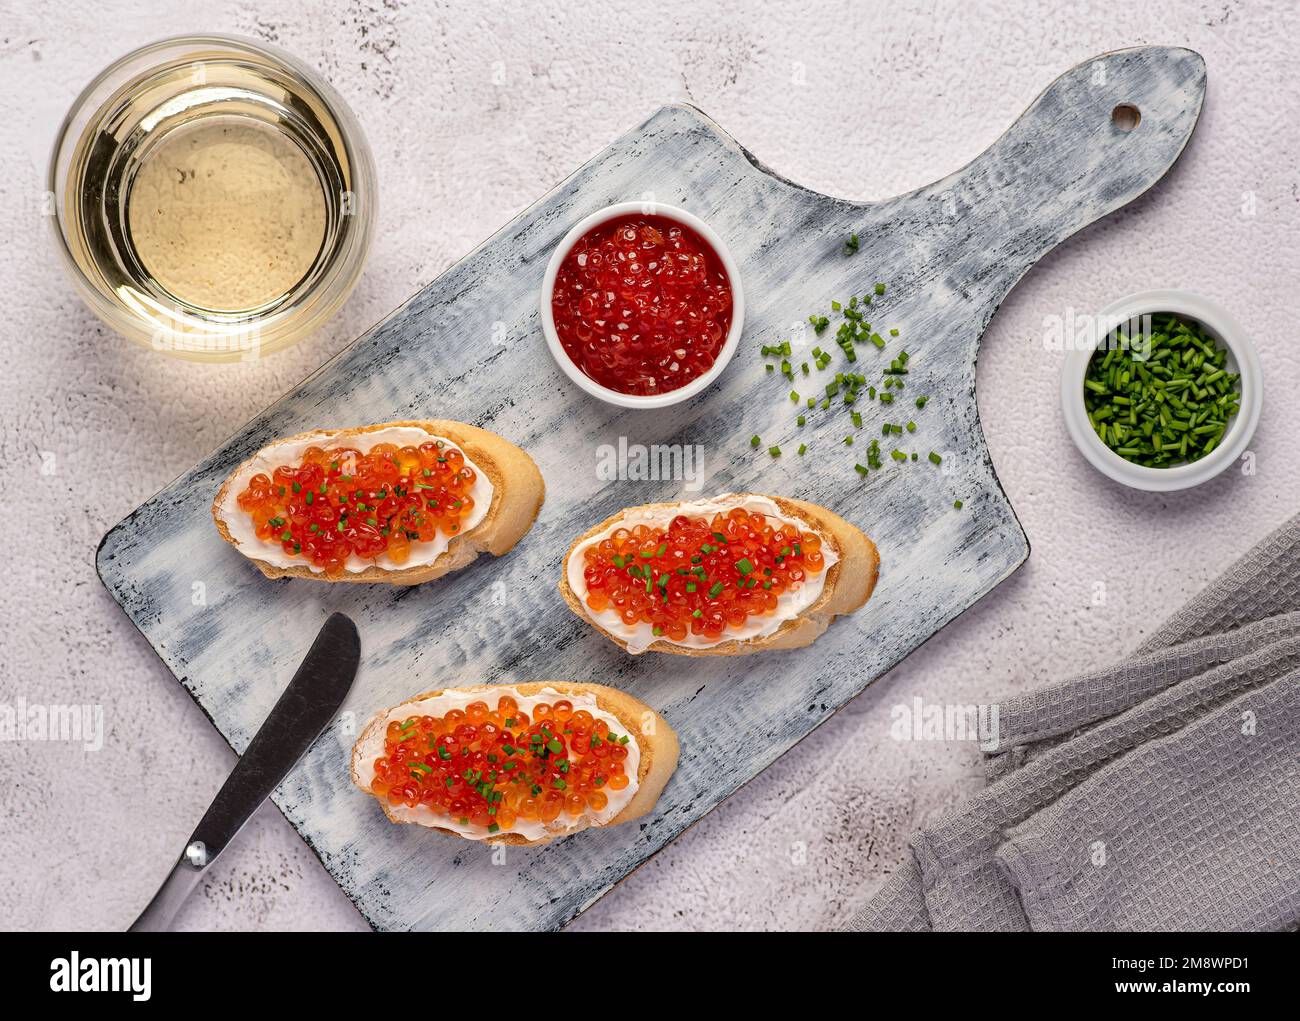 Fotografia gastronomica di sandwich con caviale, erba cipollina, vino bianco, antipasto, delicatezza Foto Stock